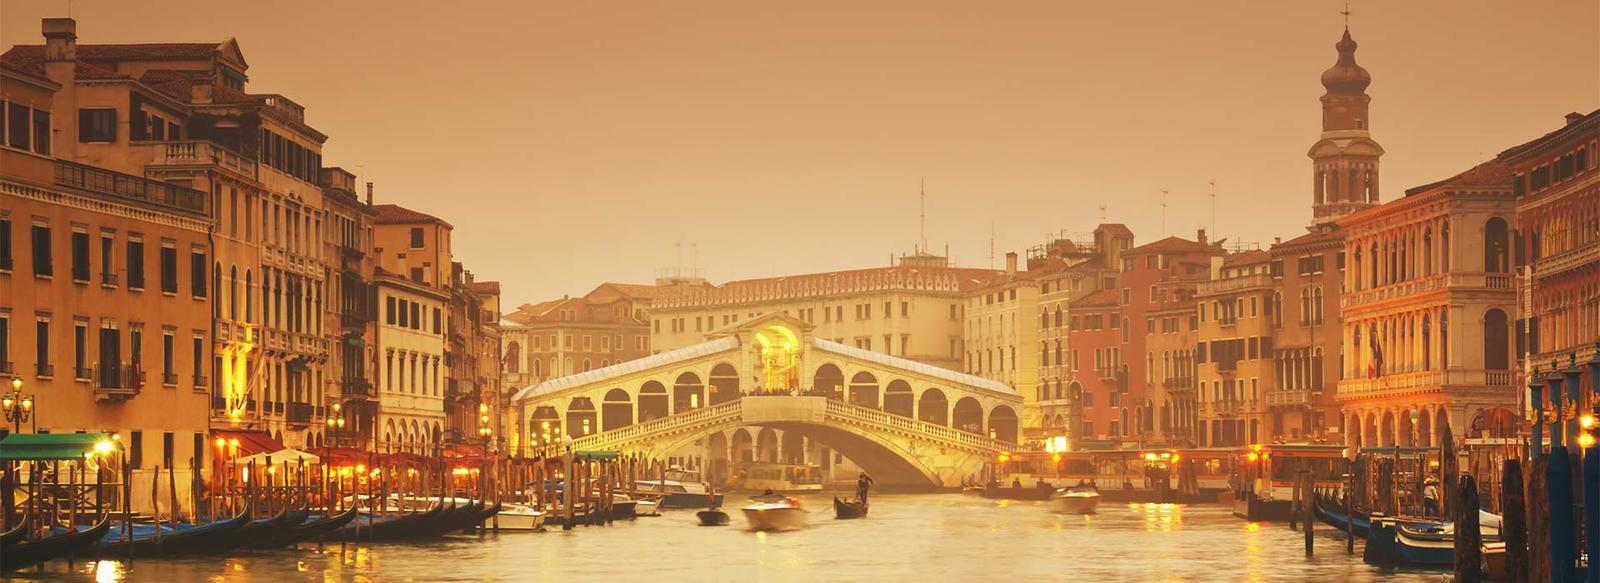 Ideale per visitare Venezia